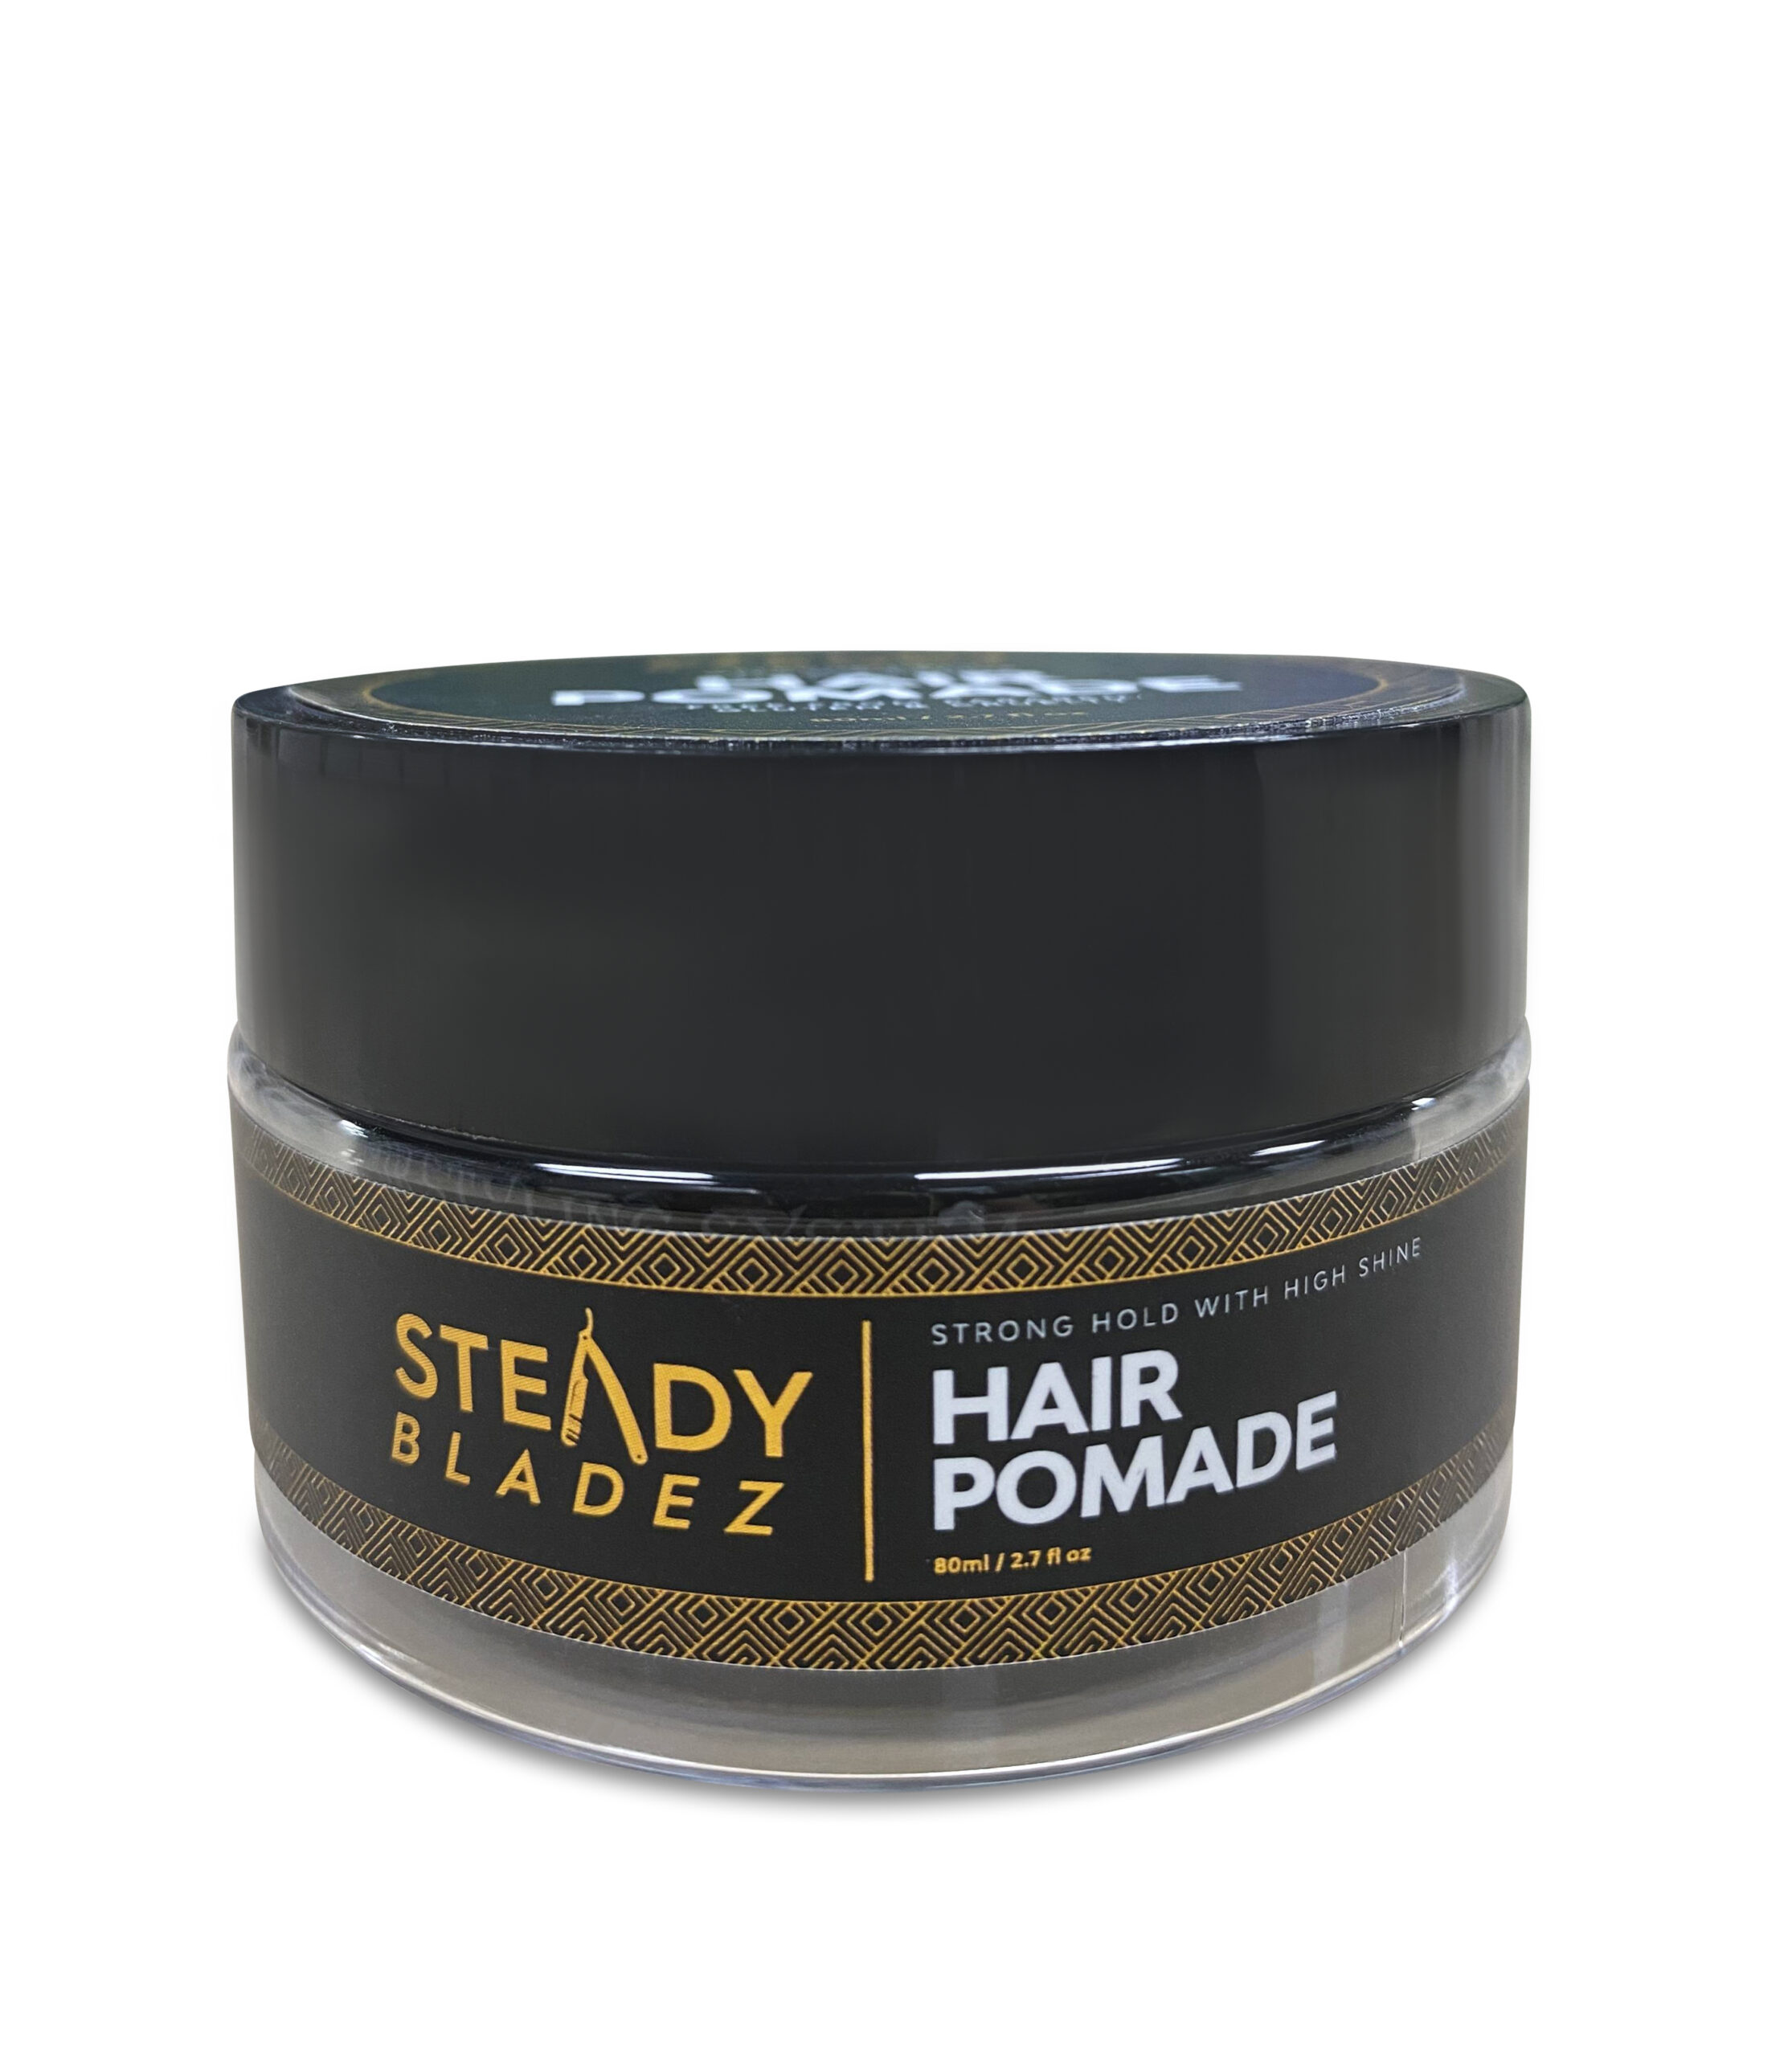 Steady Bladez – Hair Pomade